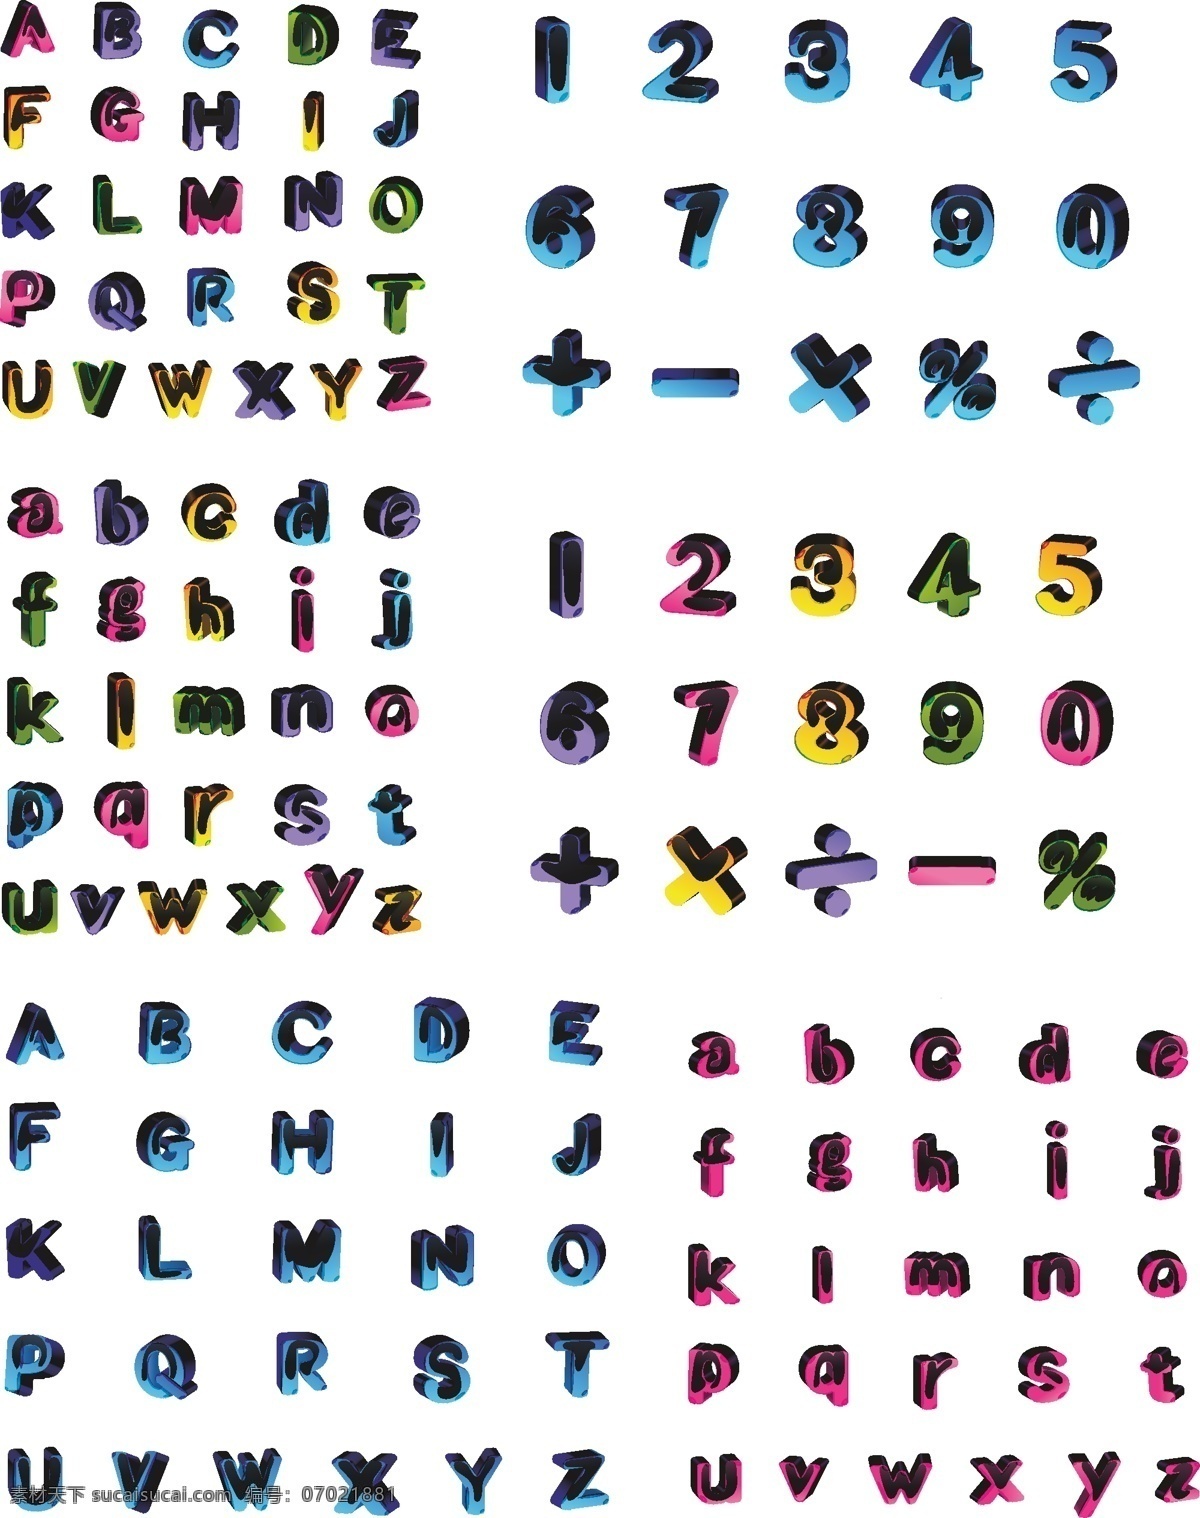 3d 标识标志图标 符号 数字 字母 矢量 模板下载 大写 小写 加减乘除 矢量图 艺术字